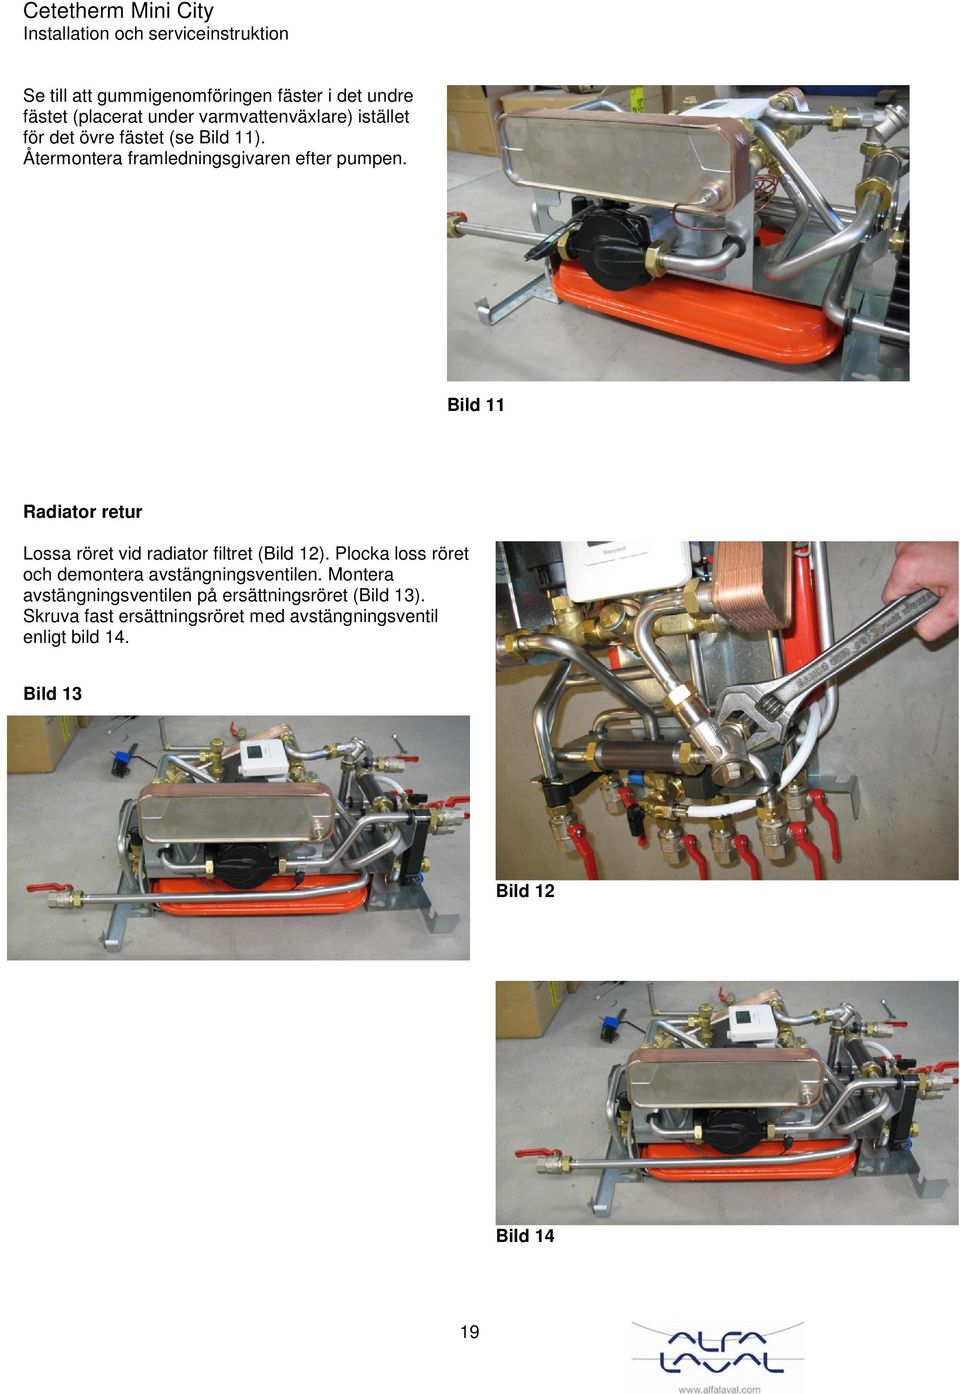 Bild 11 Radiator retur Lossa röret vid radiator filtret (Bild 12).